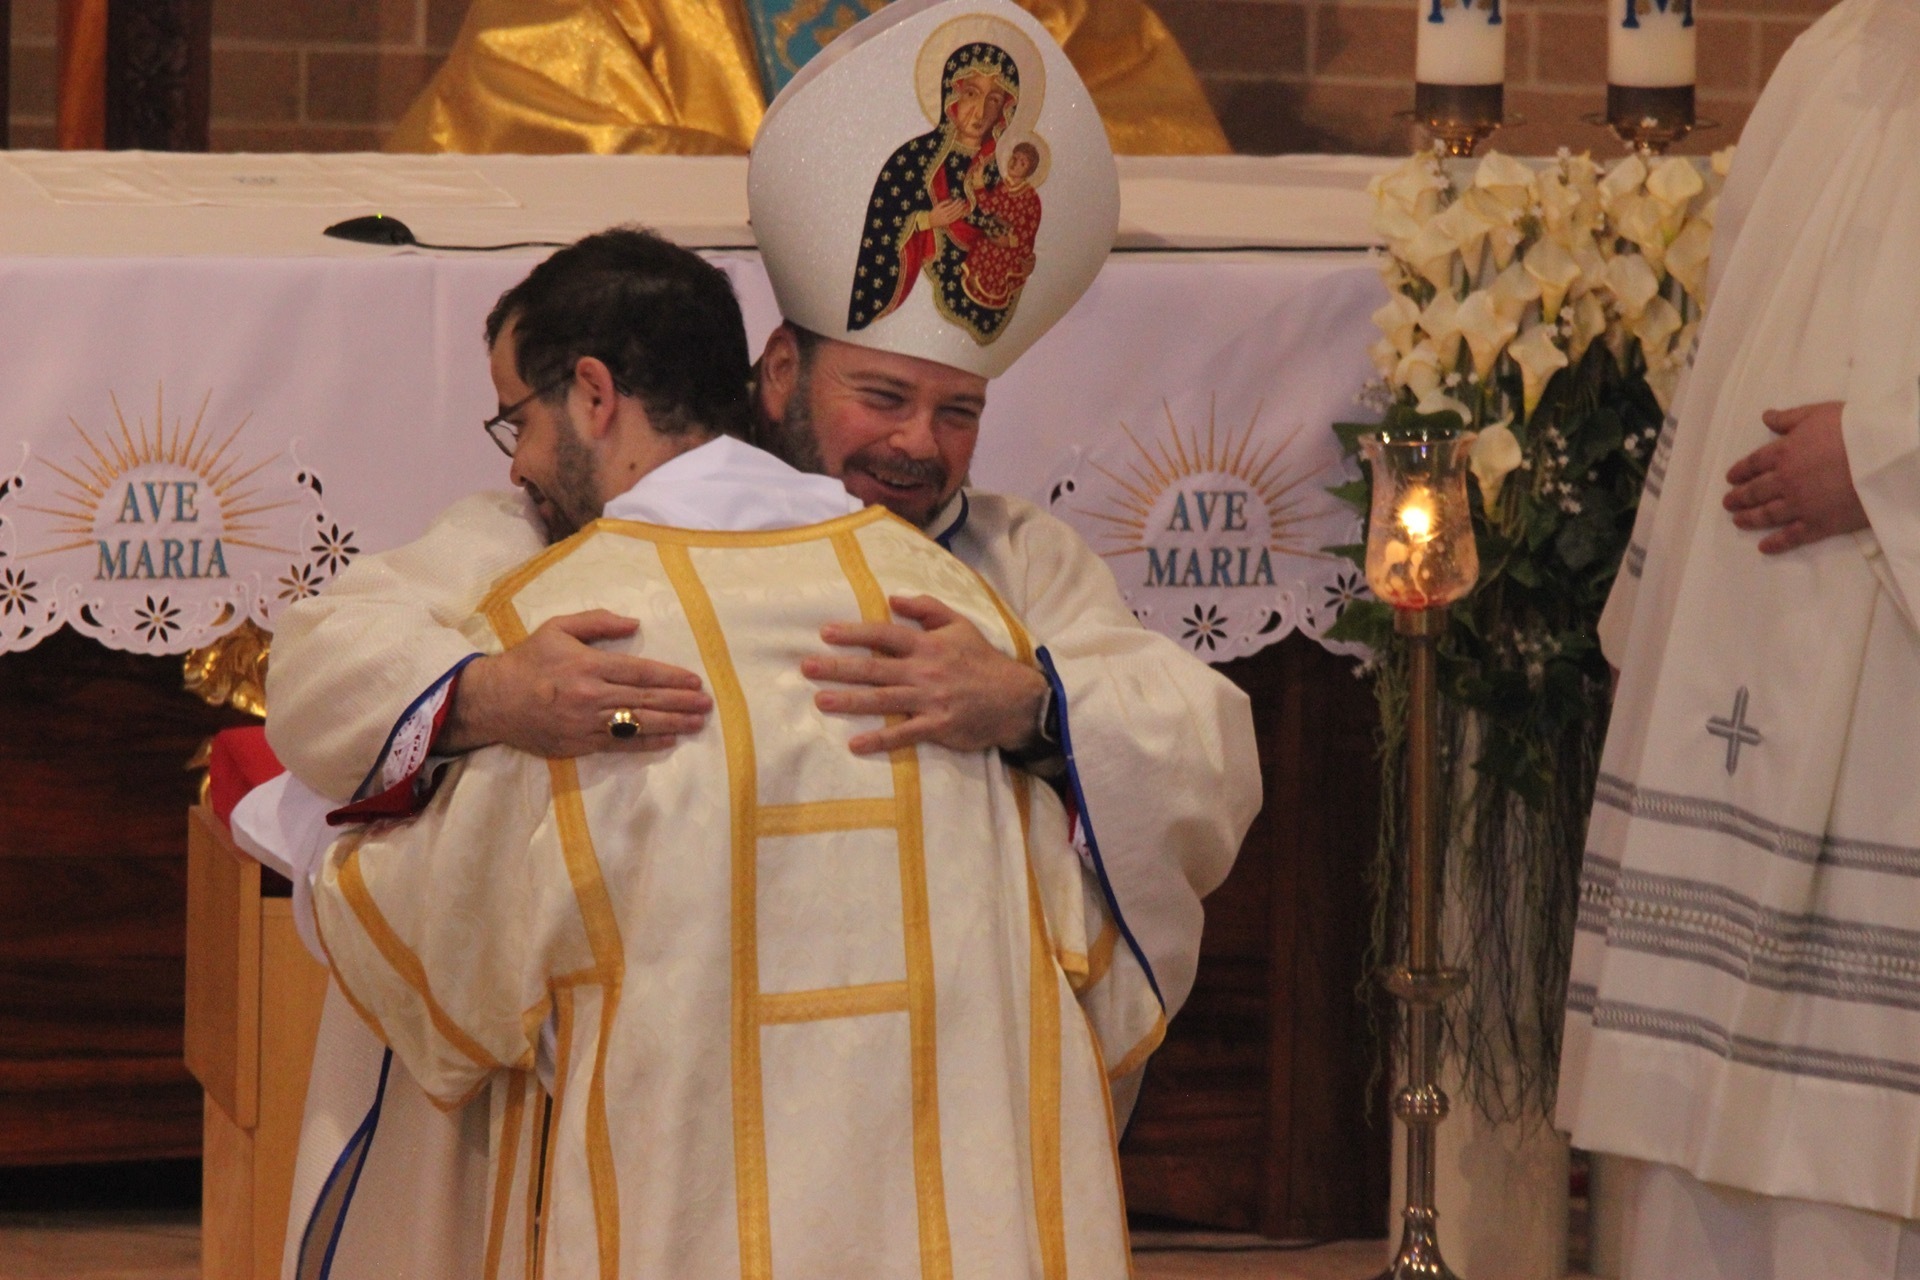 Congratulations, you are now a Deacon Fr. Joseph Maria